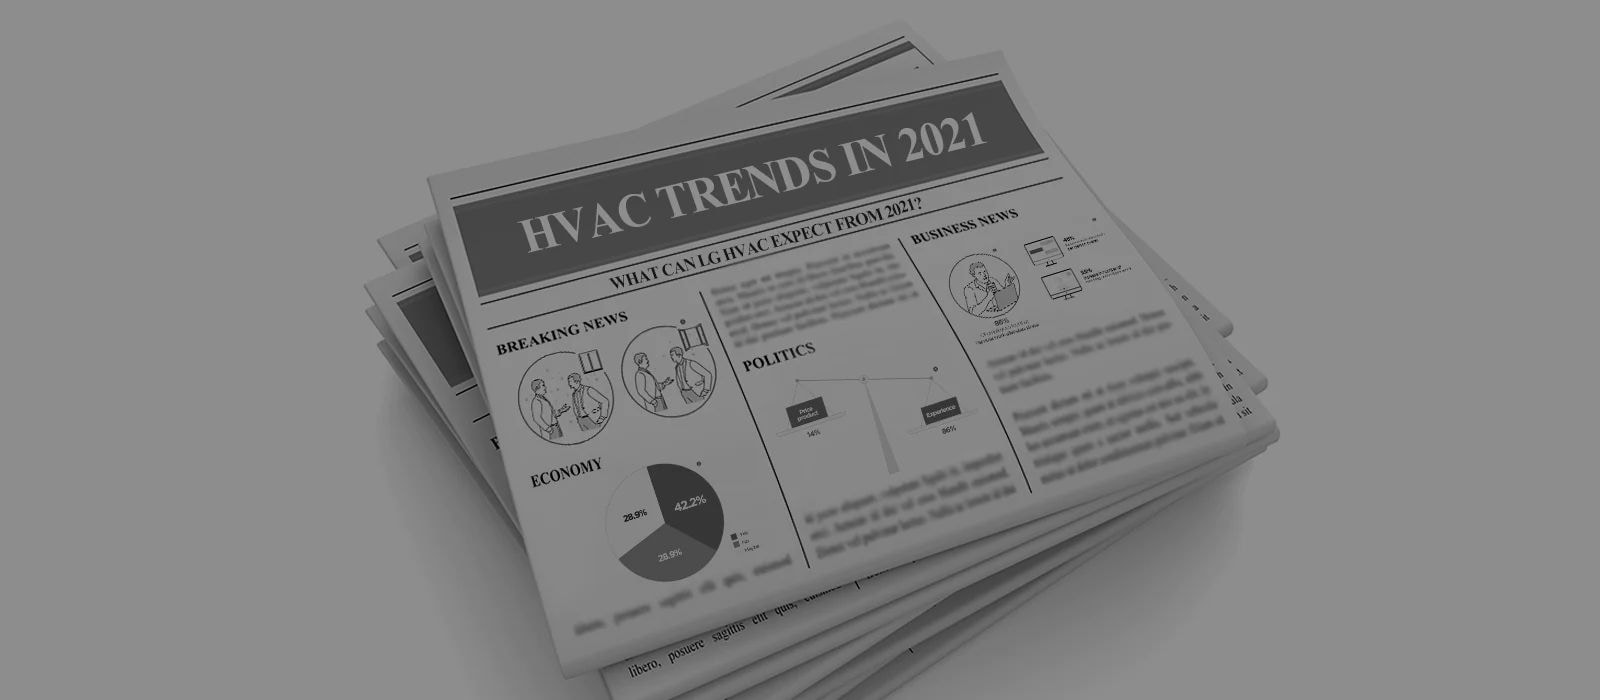 مجموعة من الصحف والمقال الرئيسي يتحدث عن اتجاهات أنظمة التدفئة والتهوية وتكييف الهواء (HVAC) في عام 2021. 